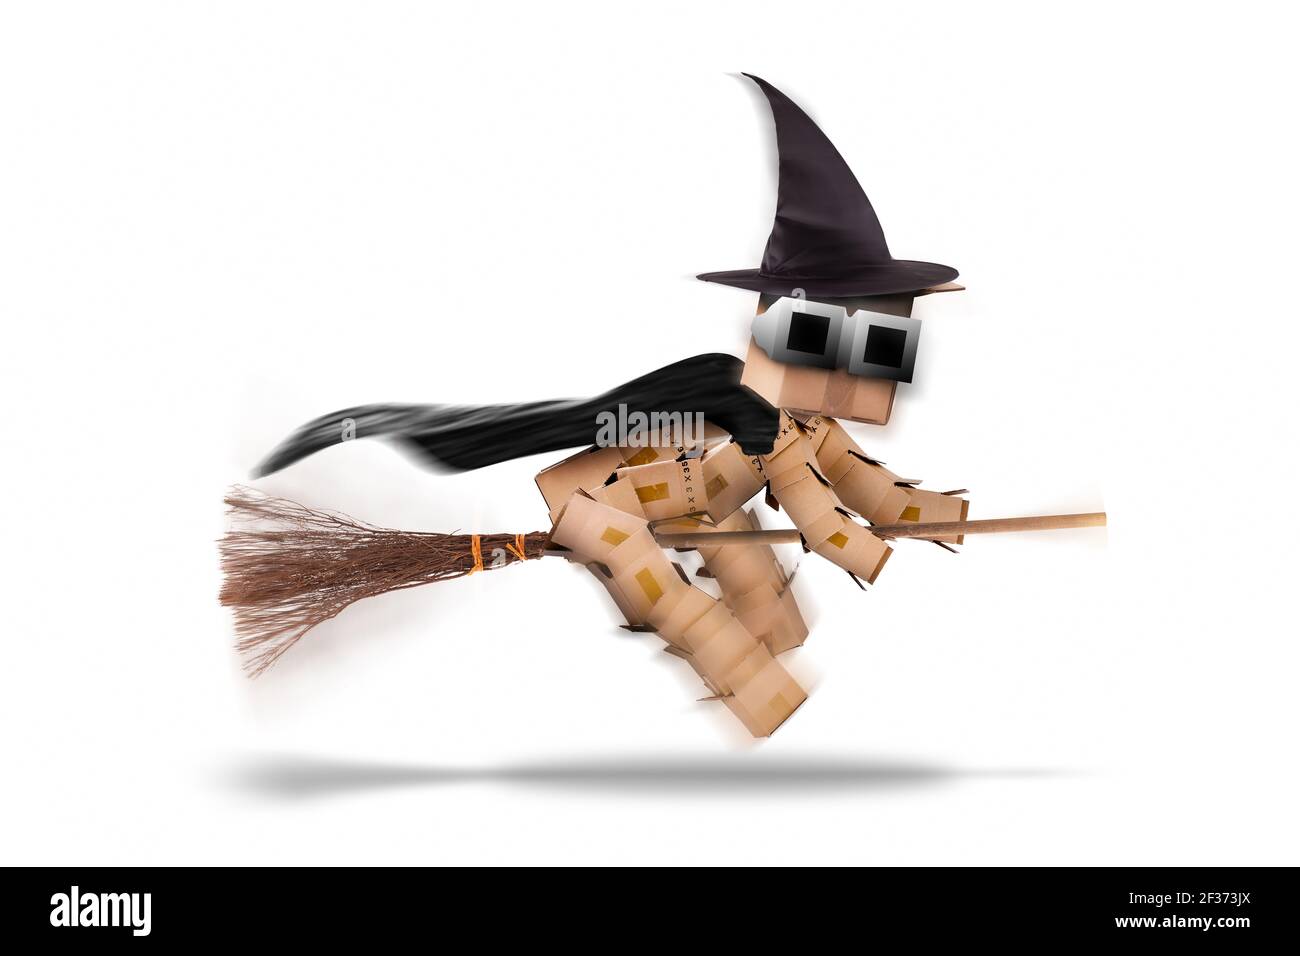 Halloween personaggio strega volare su un bastone o besom con cappello streghe e capo. Isolato su sfondo bianco. Icona e simbolo delle festività Foto Stock